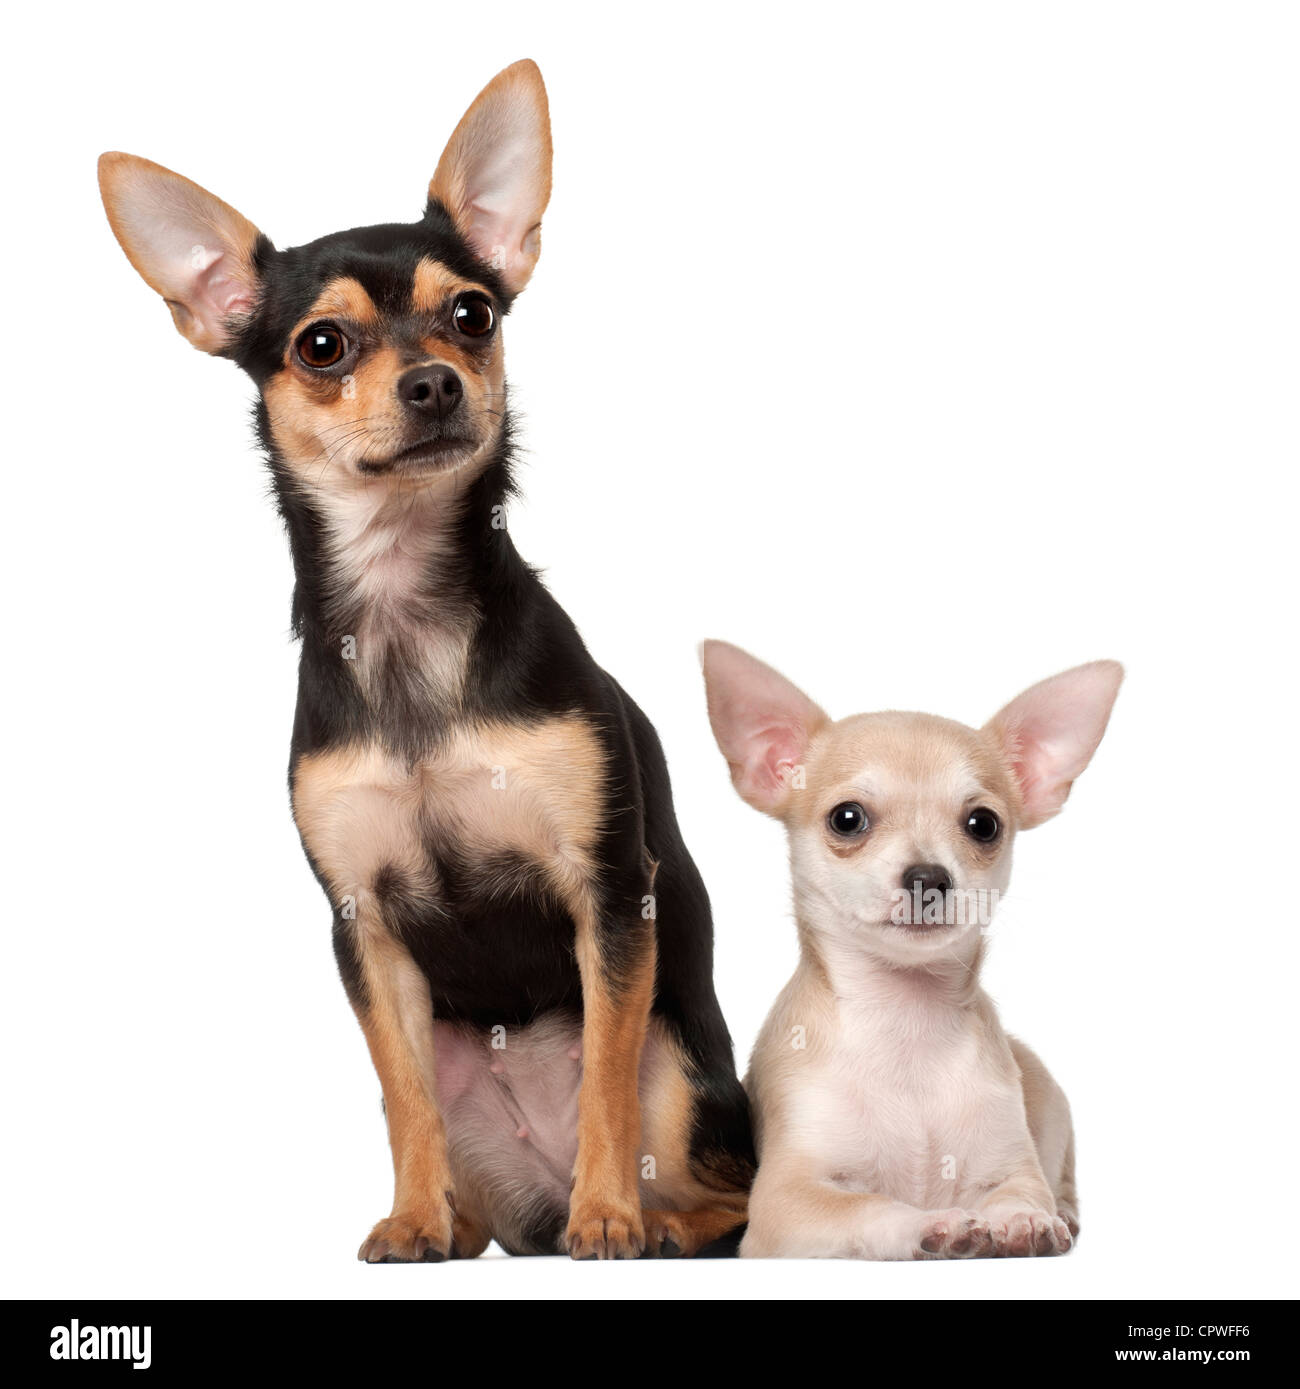 Chihuahua cucciolo, 3 mesi e 1 anno di età, seduto o disteso contro uno sfondo bianco Foto Stock